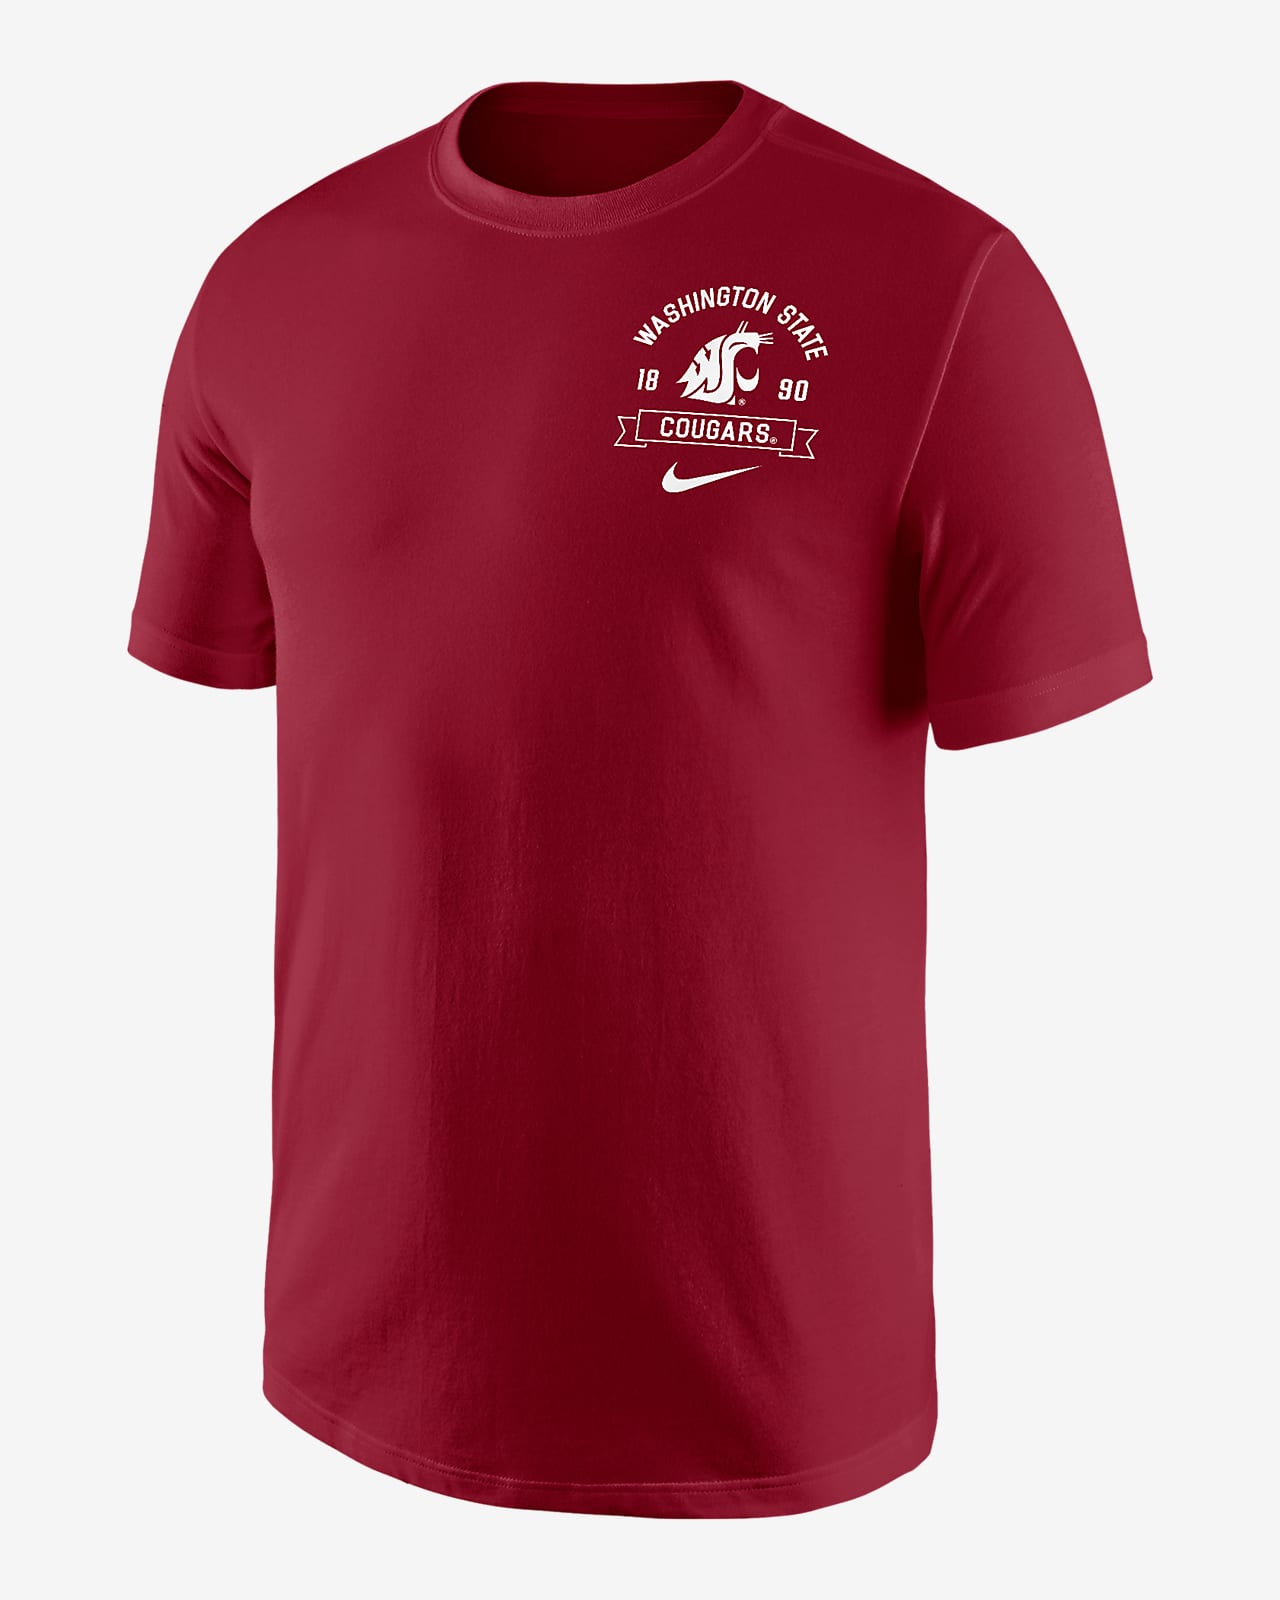 Washington State Men's Nike College Max90 T-Shirt